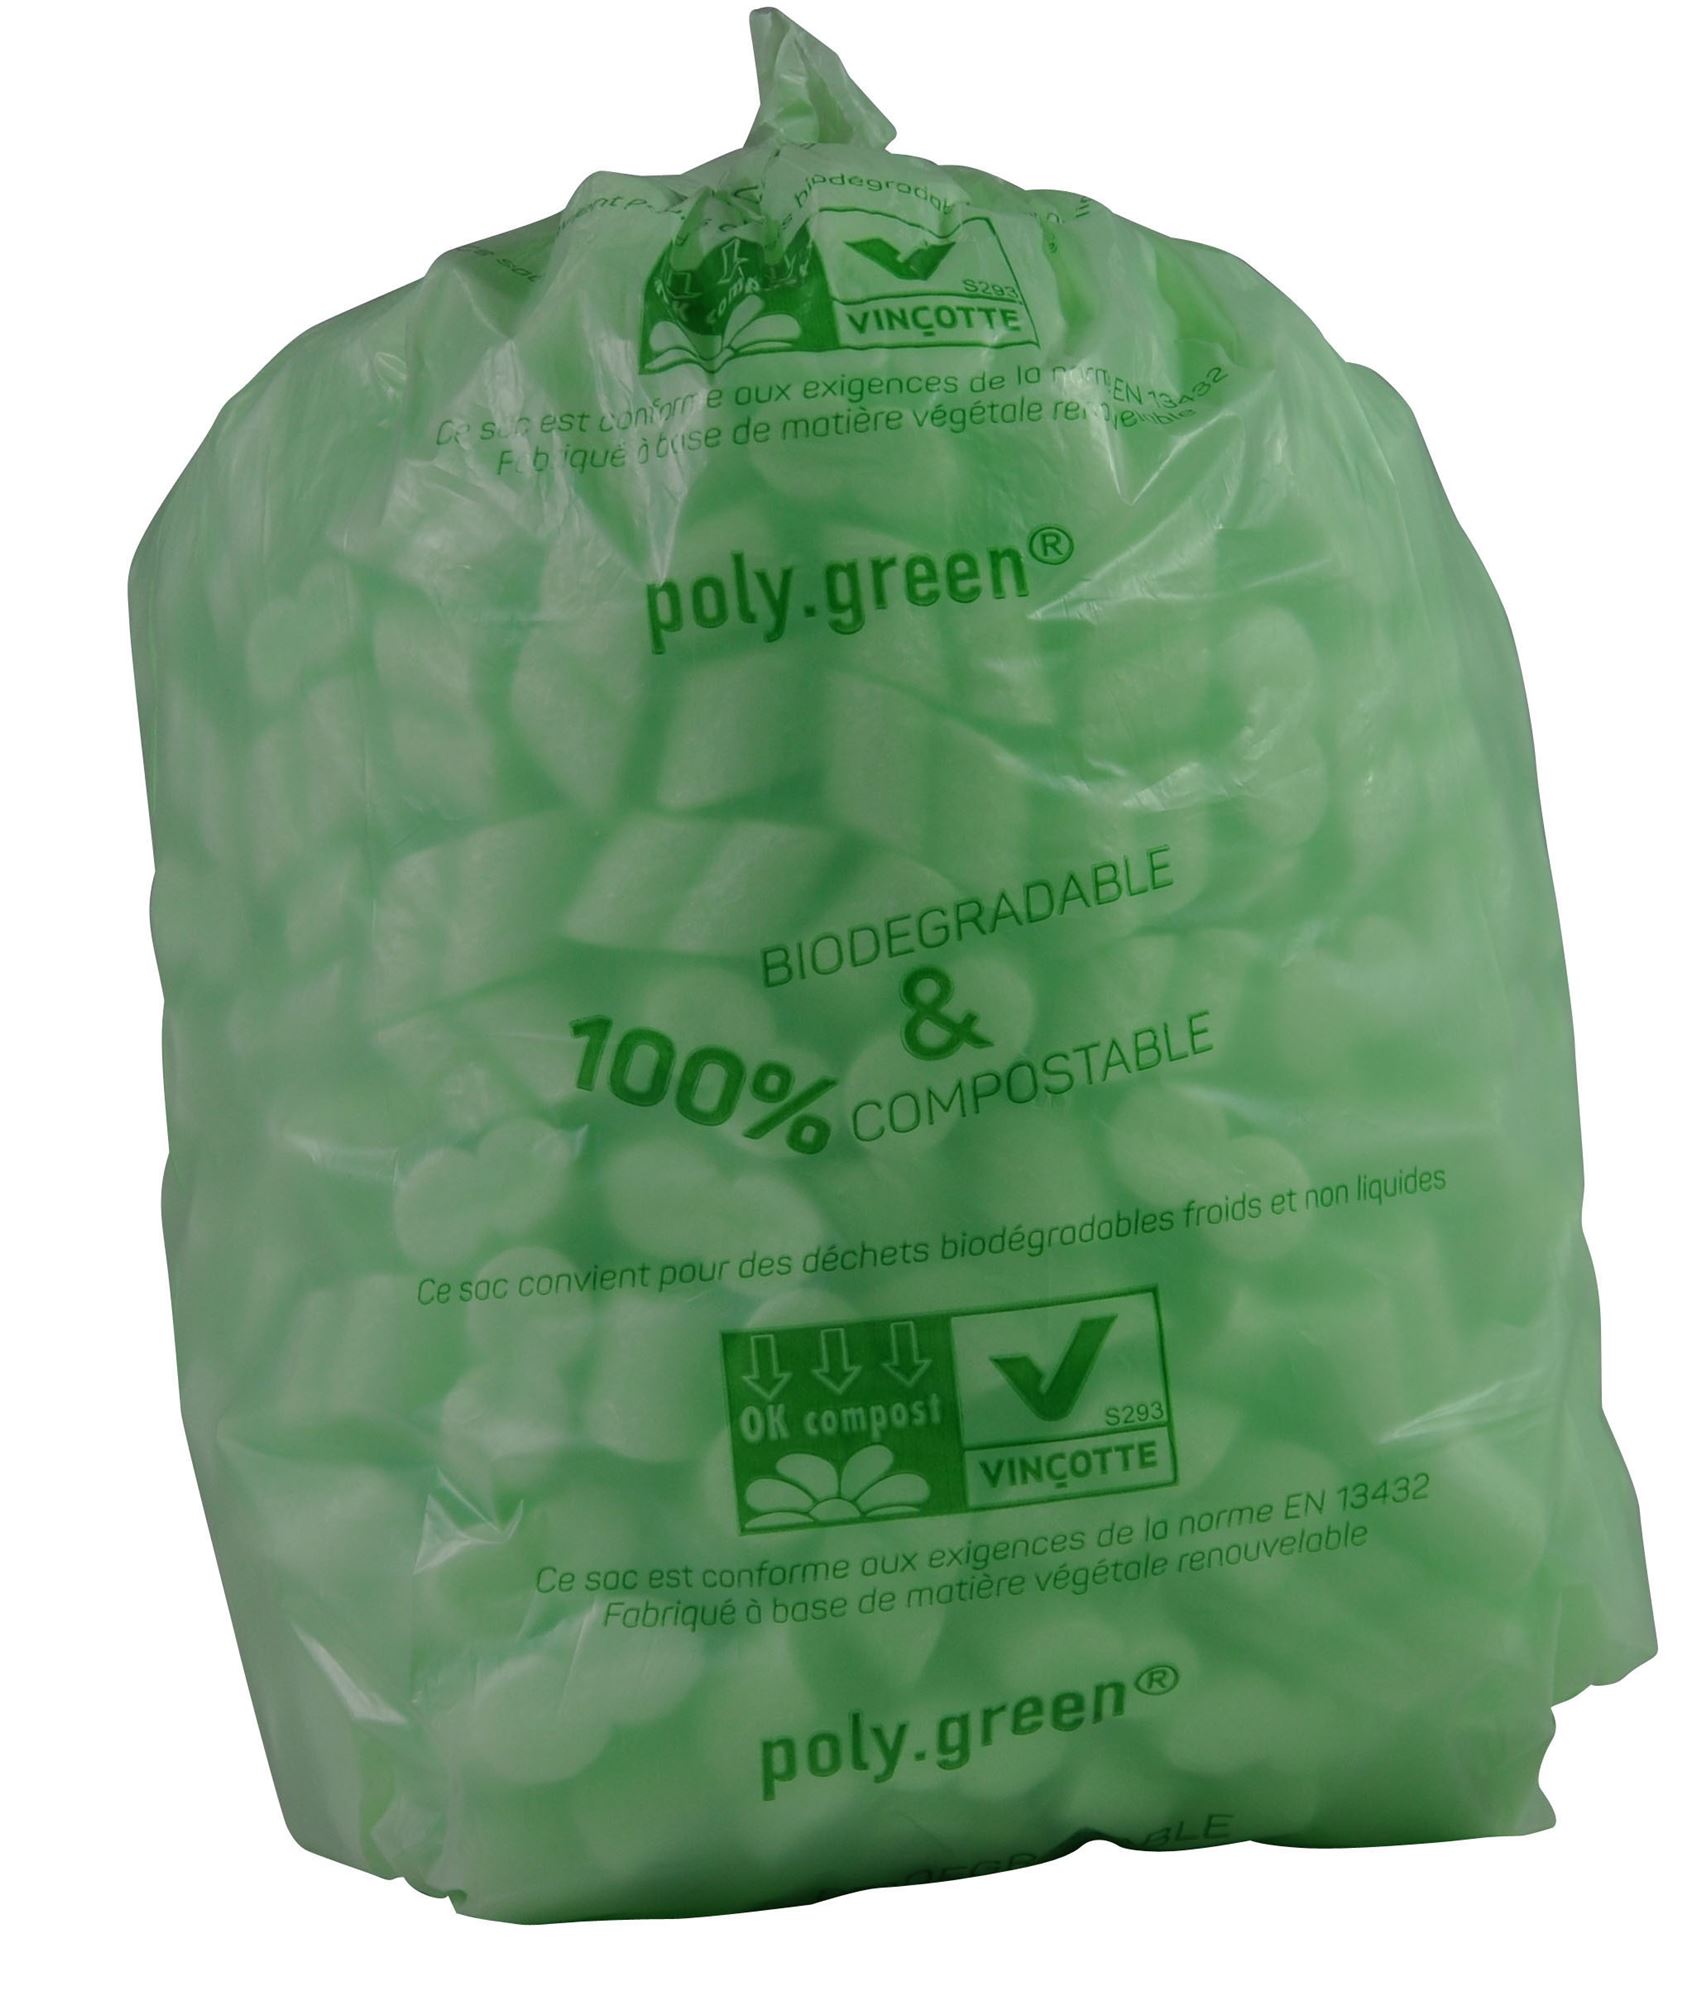 Sacs poubelle en papier compostable 10 L Sacs poubelles Caddy 100 %  biodégradables, compostables et recyclables Certifiés EN13432 et FSC -   France